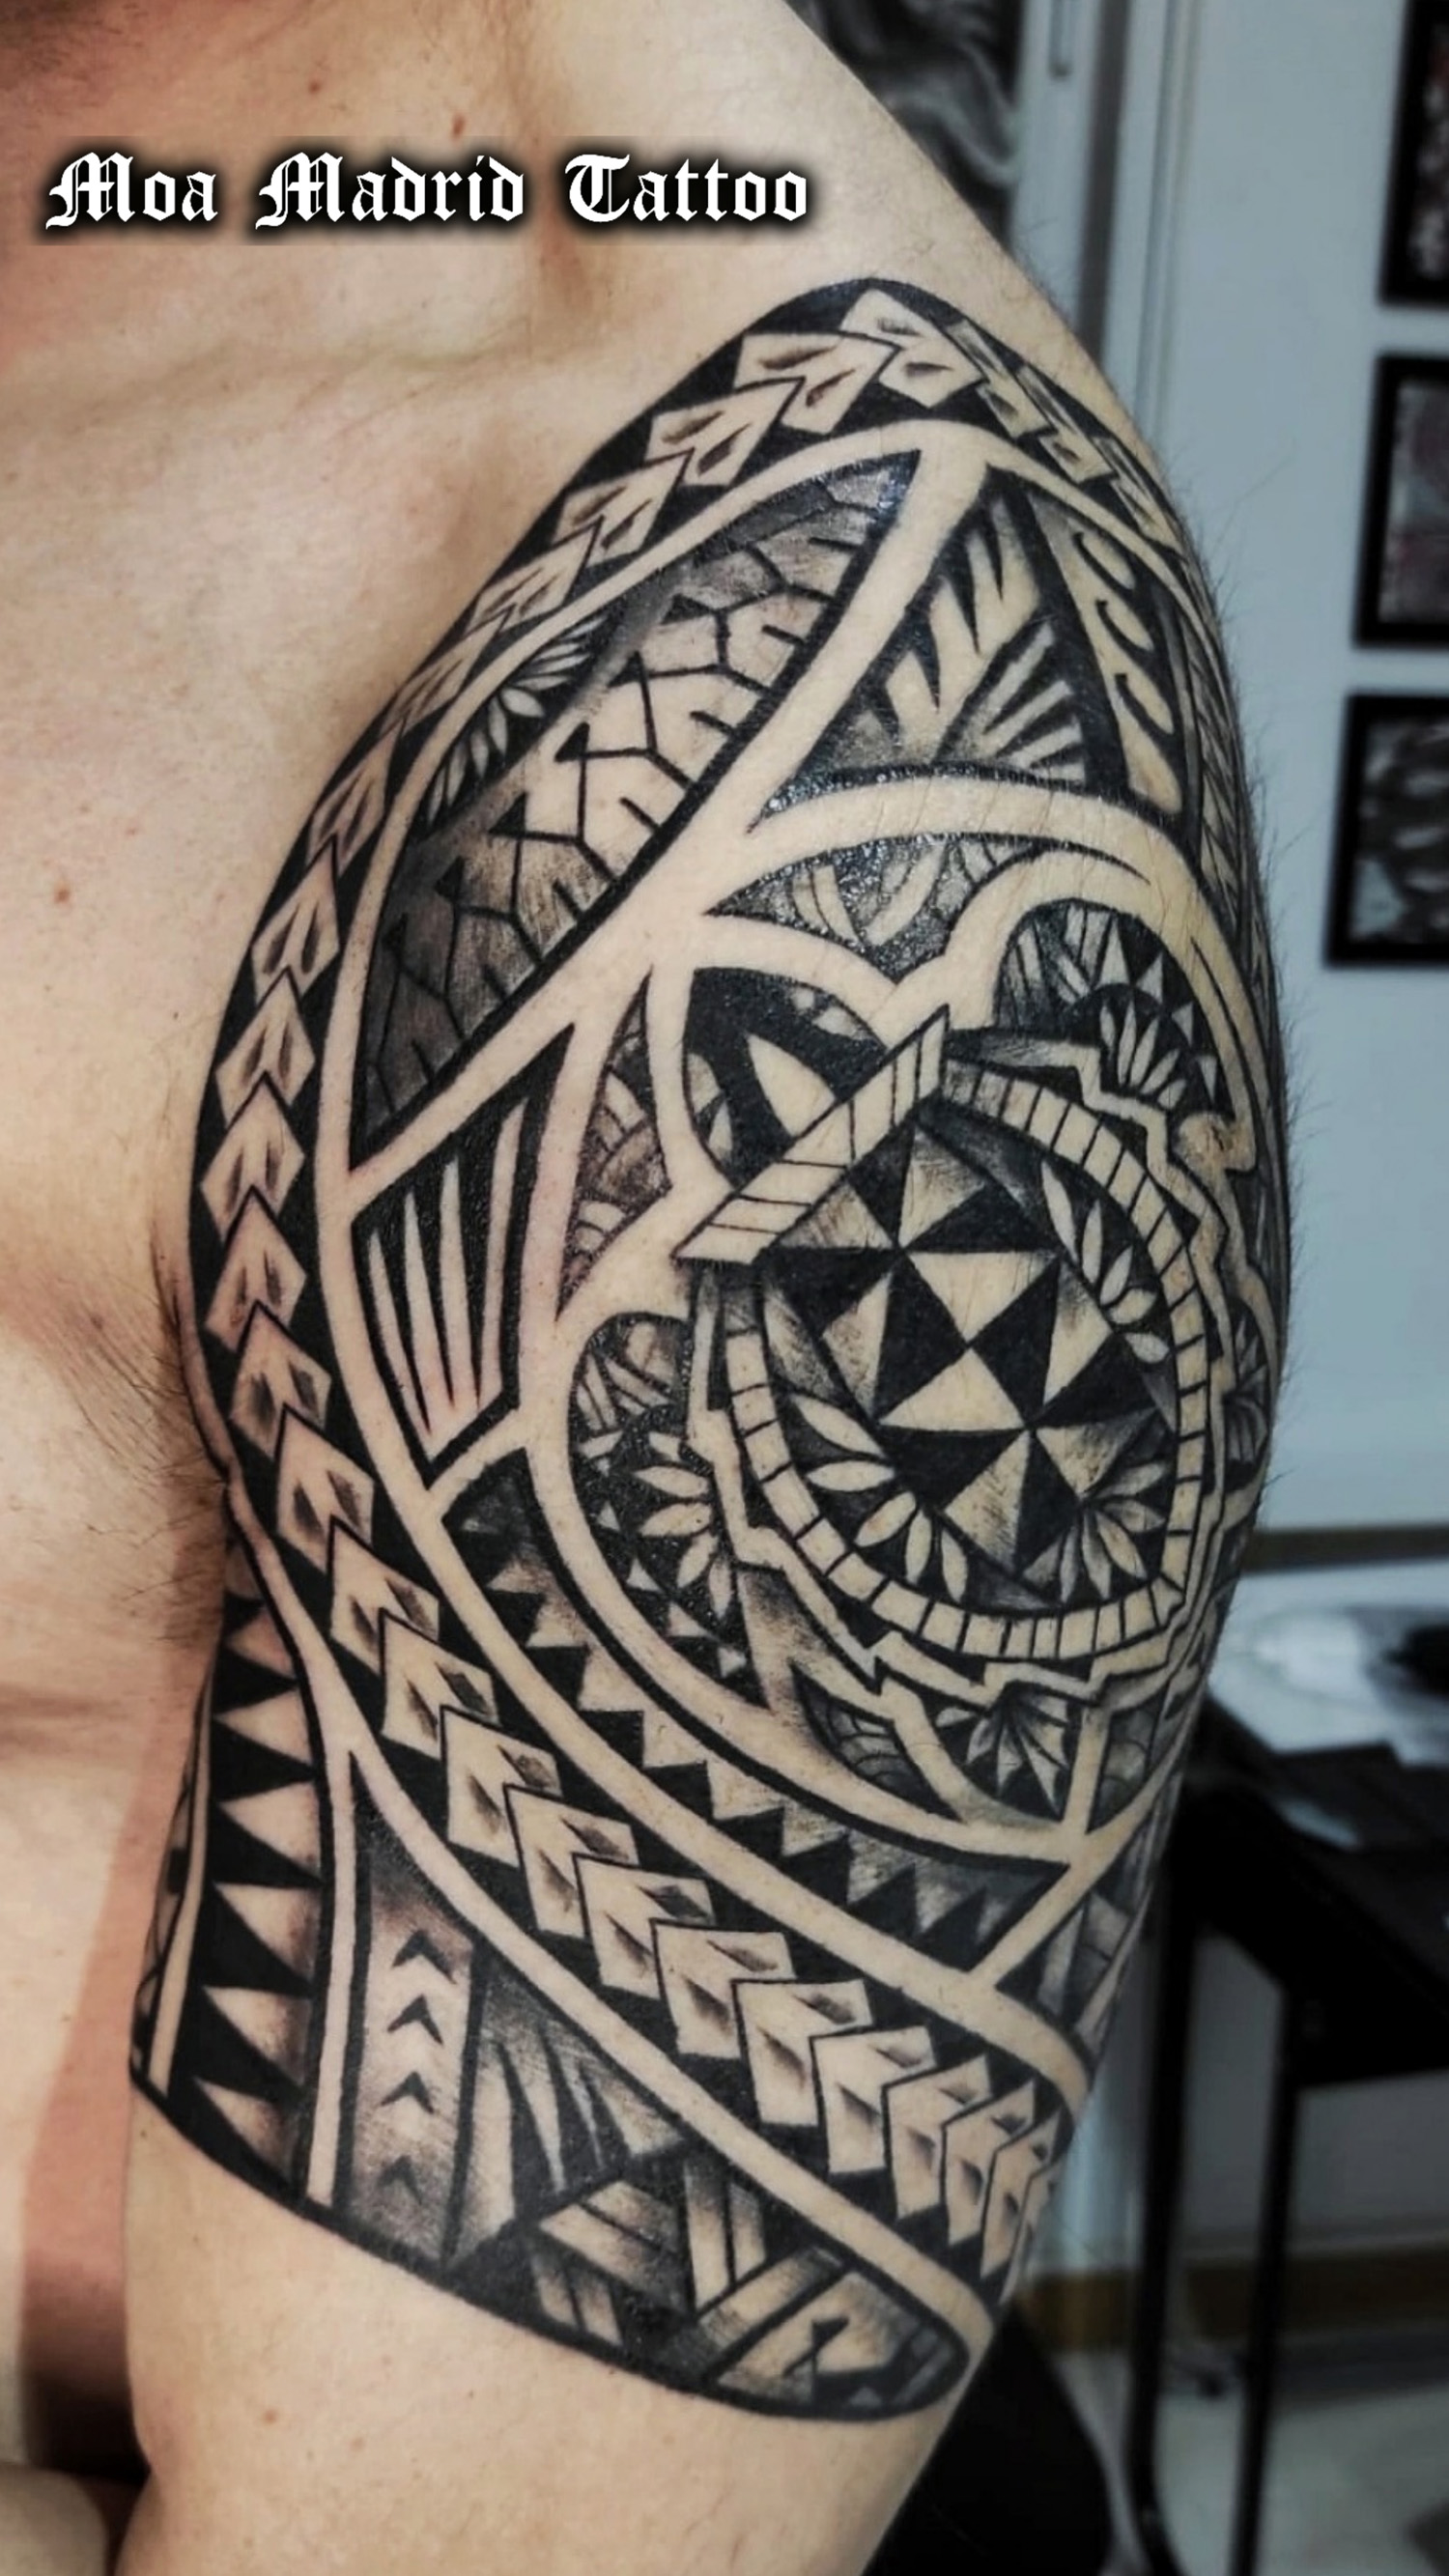 Tatuaje maorí diseño adaptado a las formas de su brazo